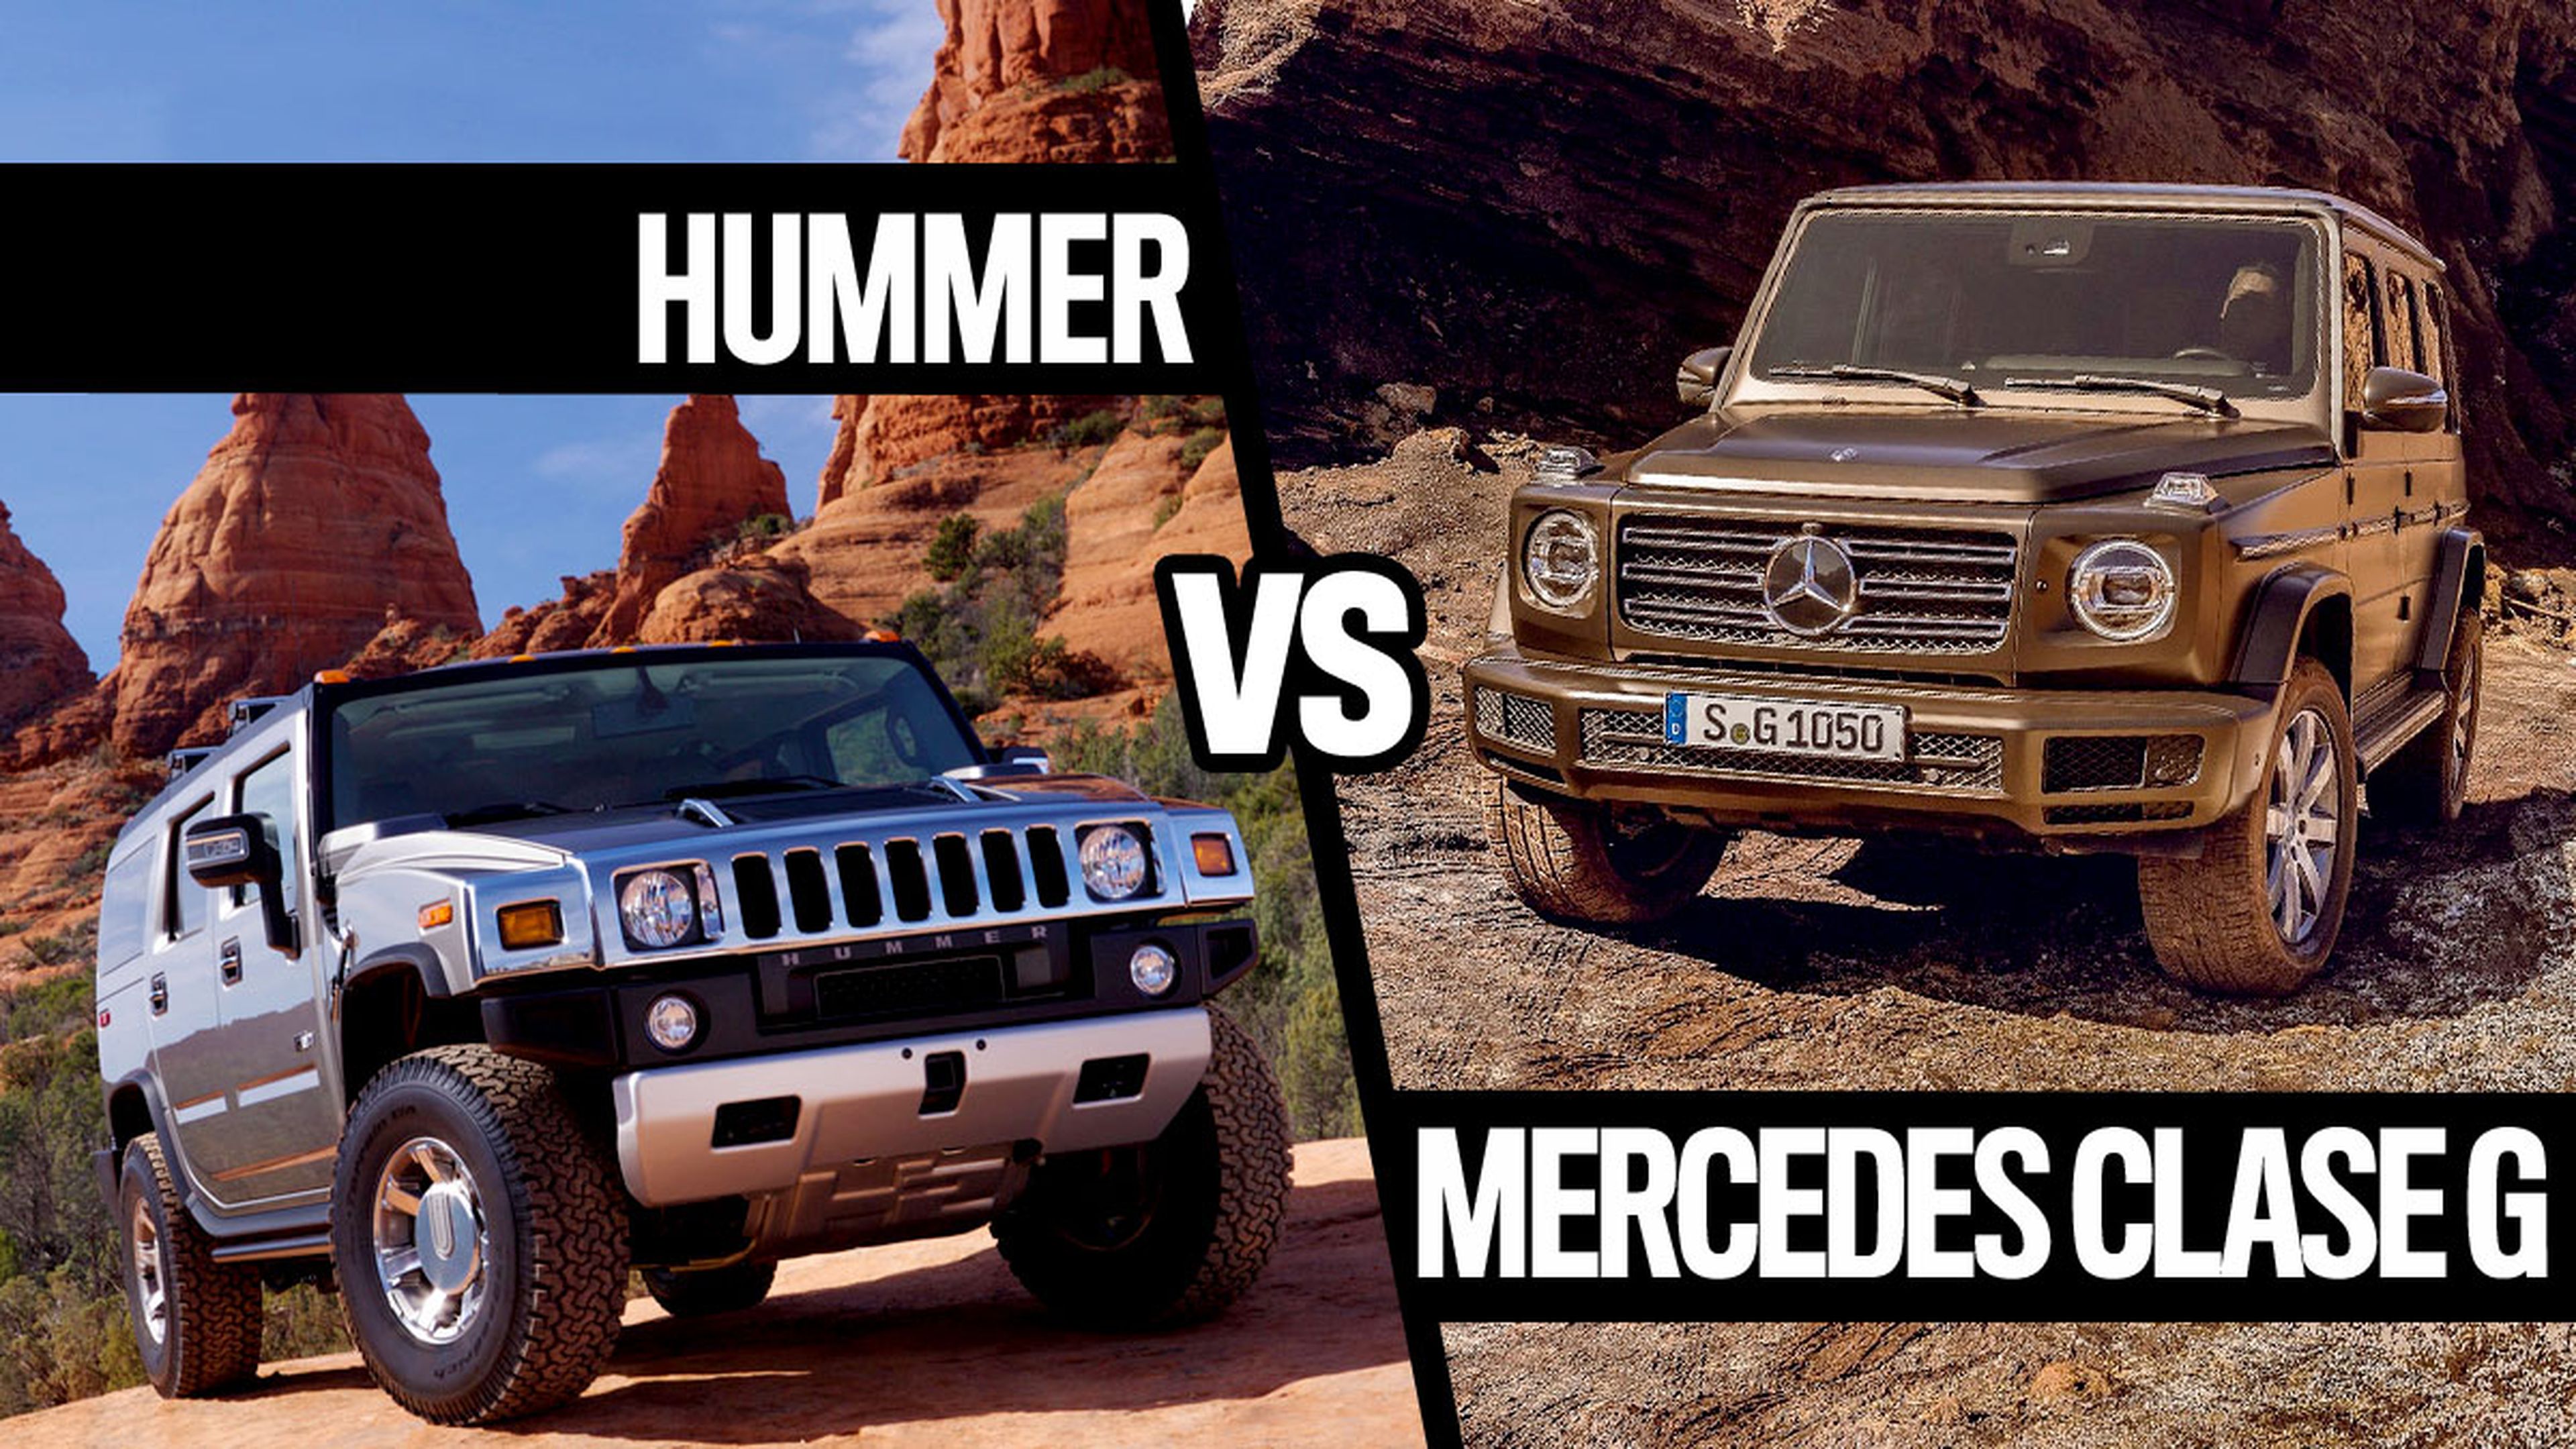 Hummer vs Mercedes Clase G